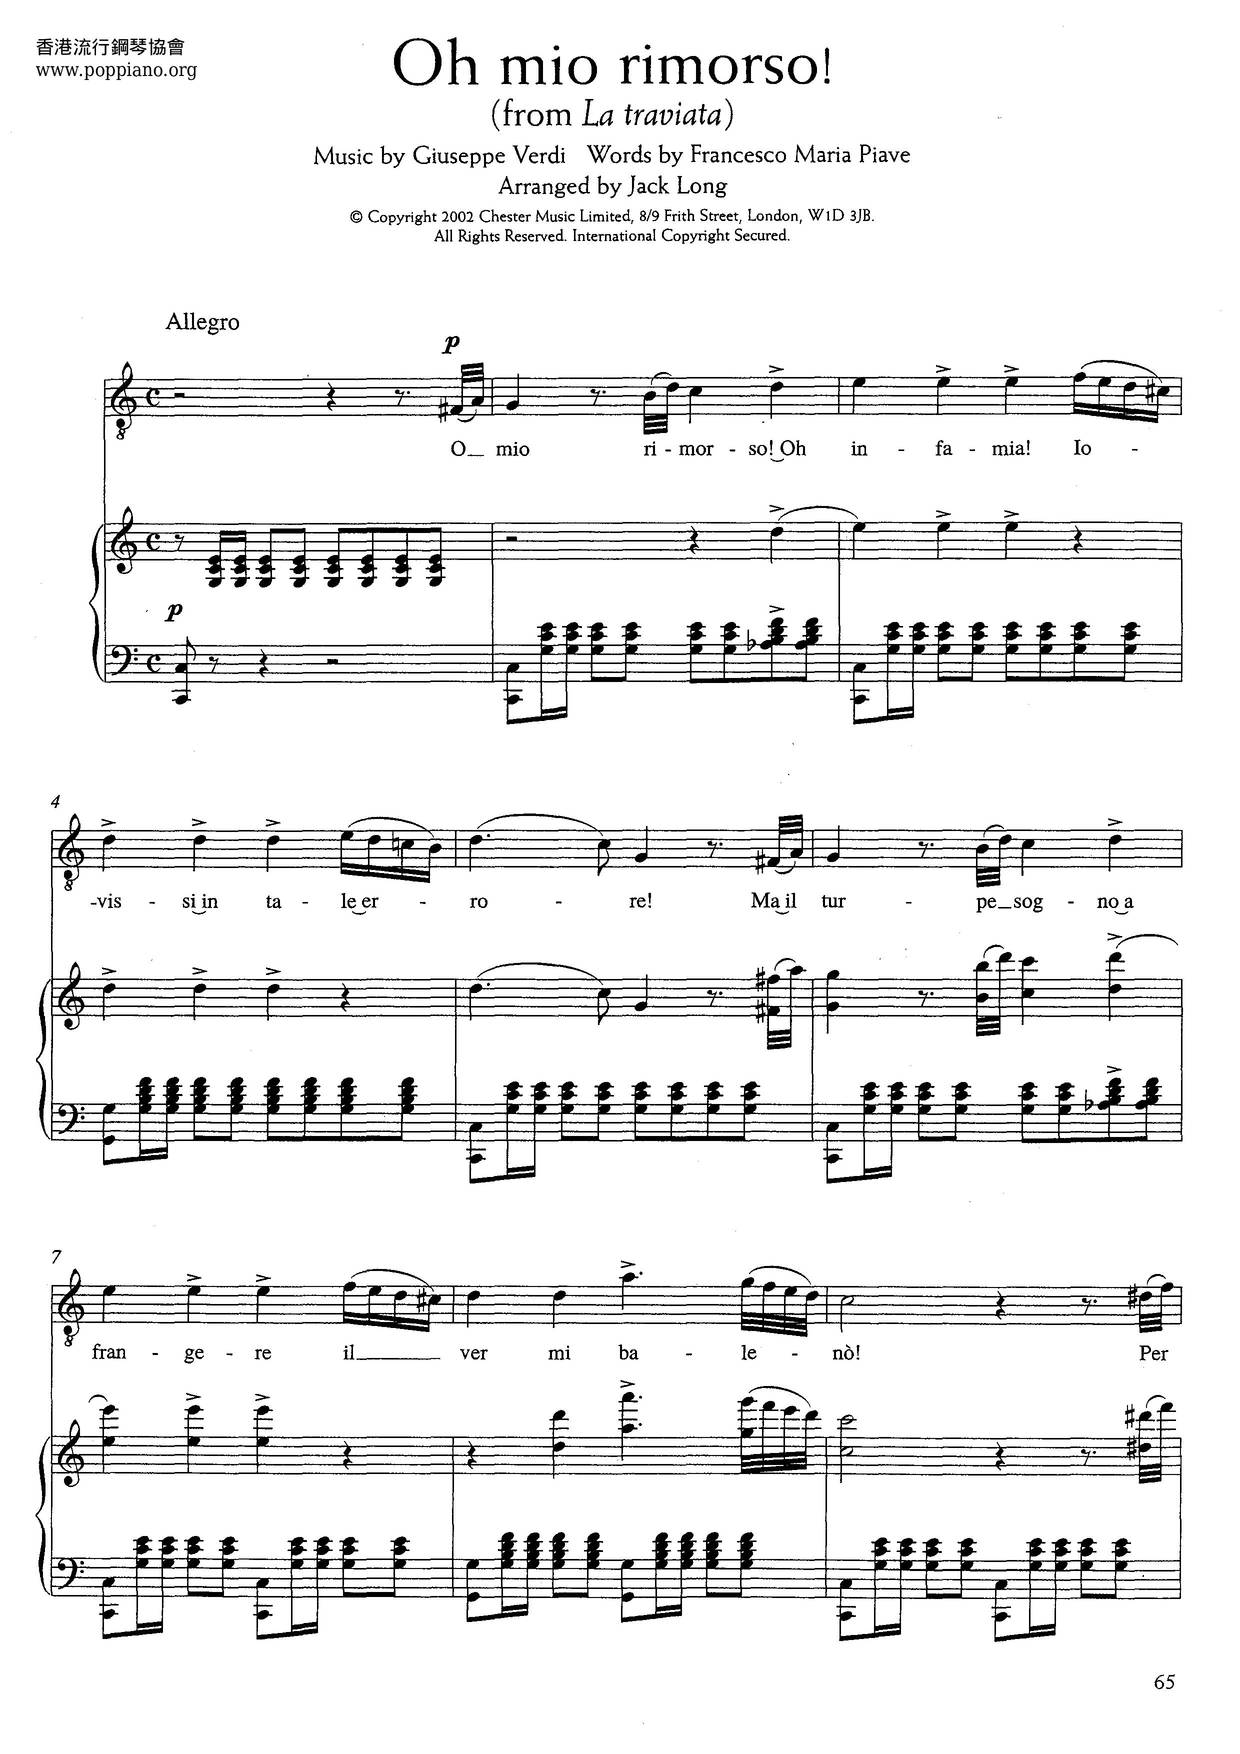 Oh Mio Rimorso! From La Traviata (Verdi) Score